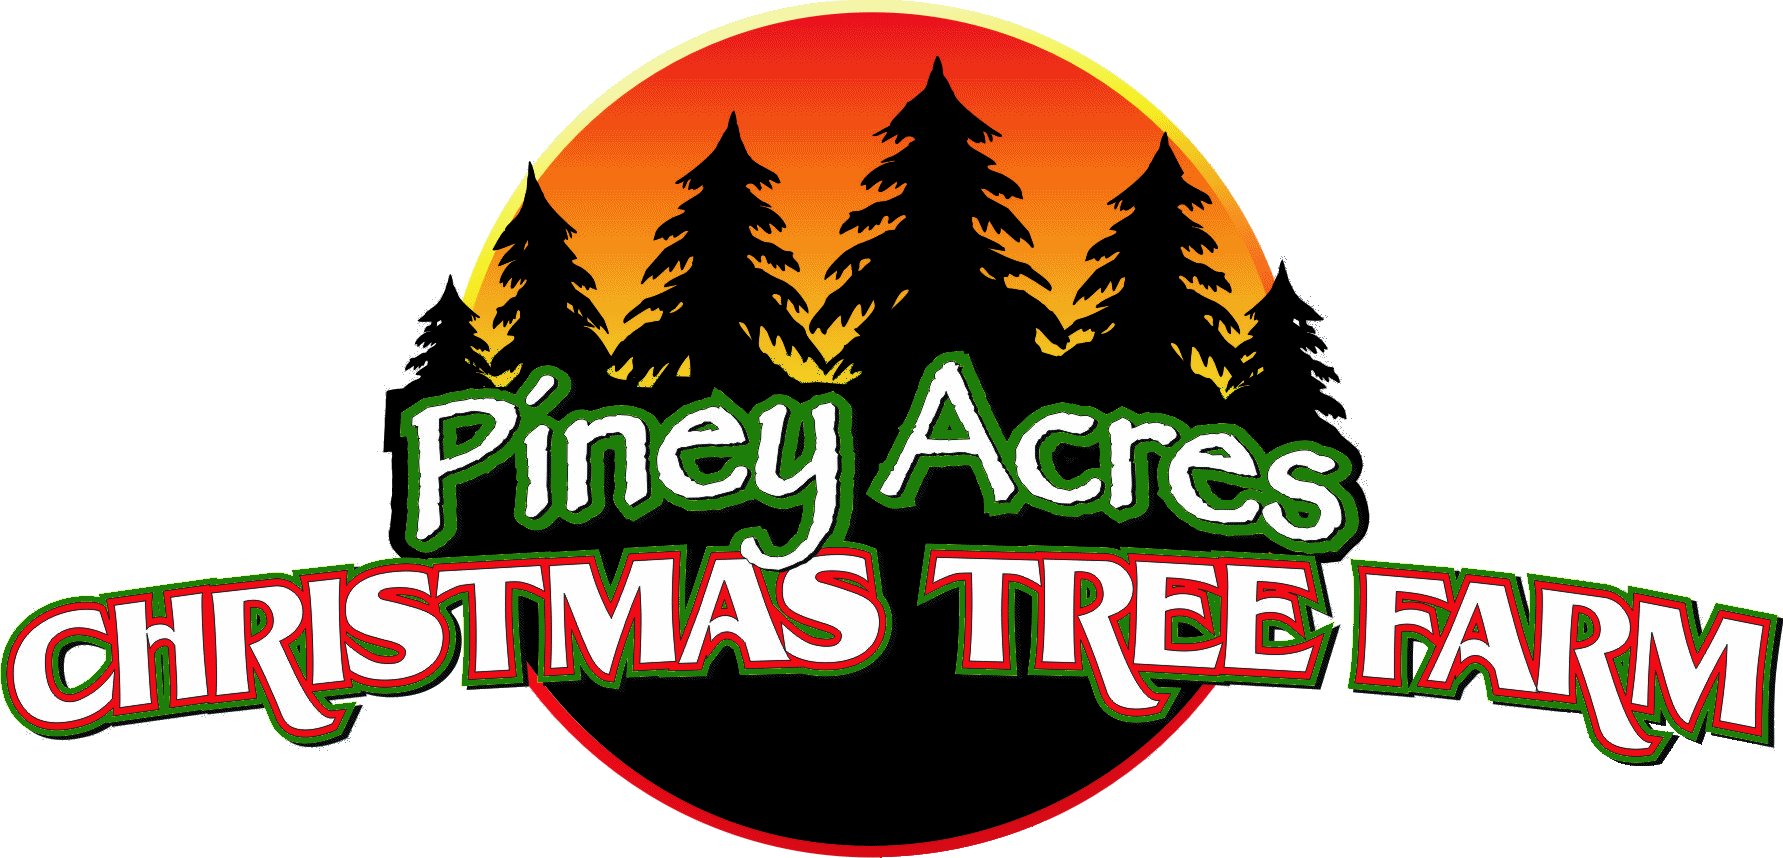 Company logo of Piney Acres